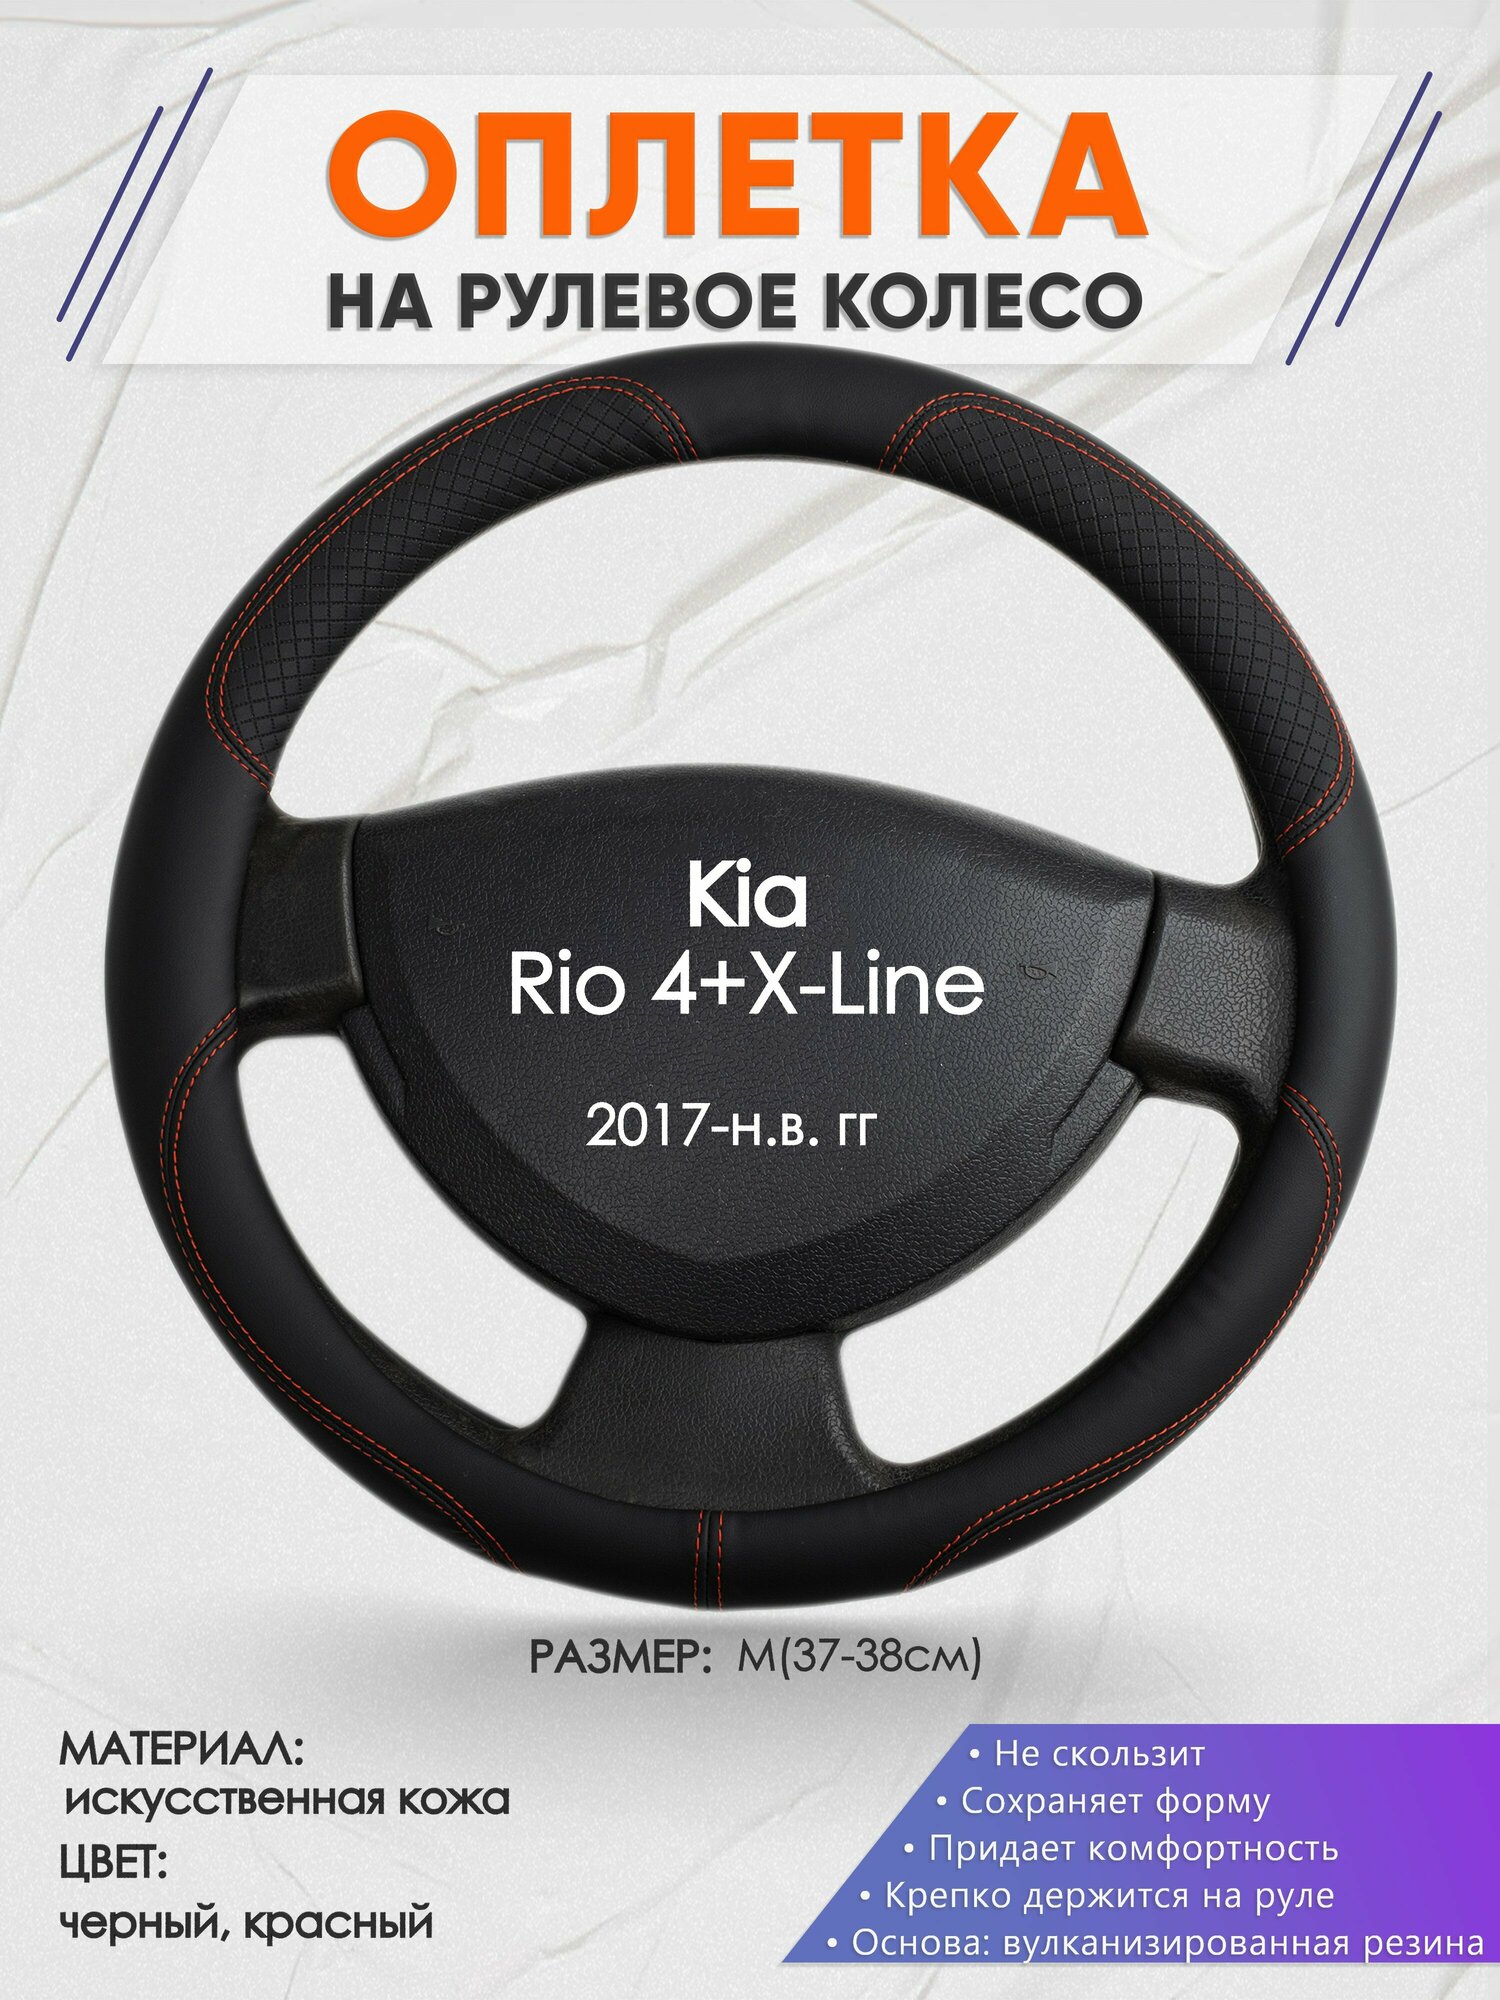 Оплетка на руль для Kia Rio 4+X-Line(Киа Рио 4 / Икс Лайн) 2017-н. в M(37-38см) Искусственная кожа 55